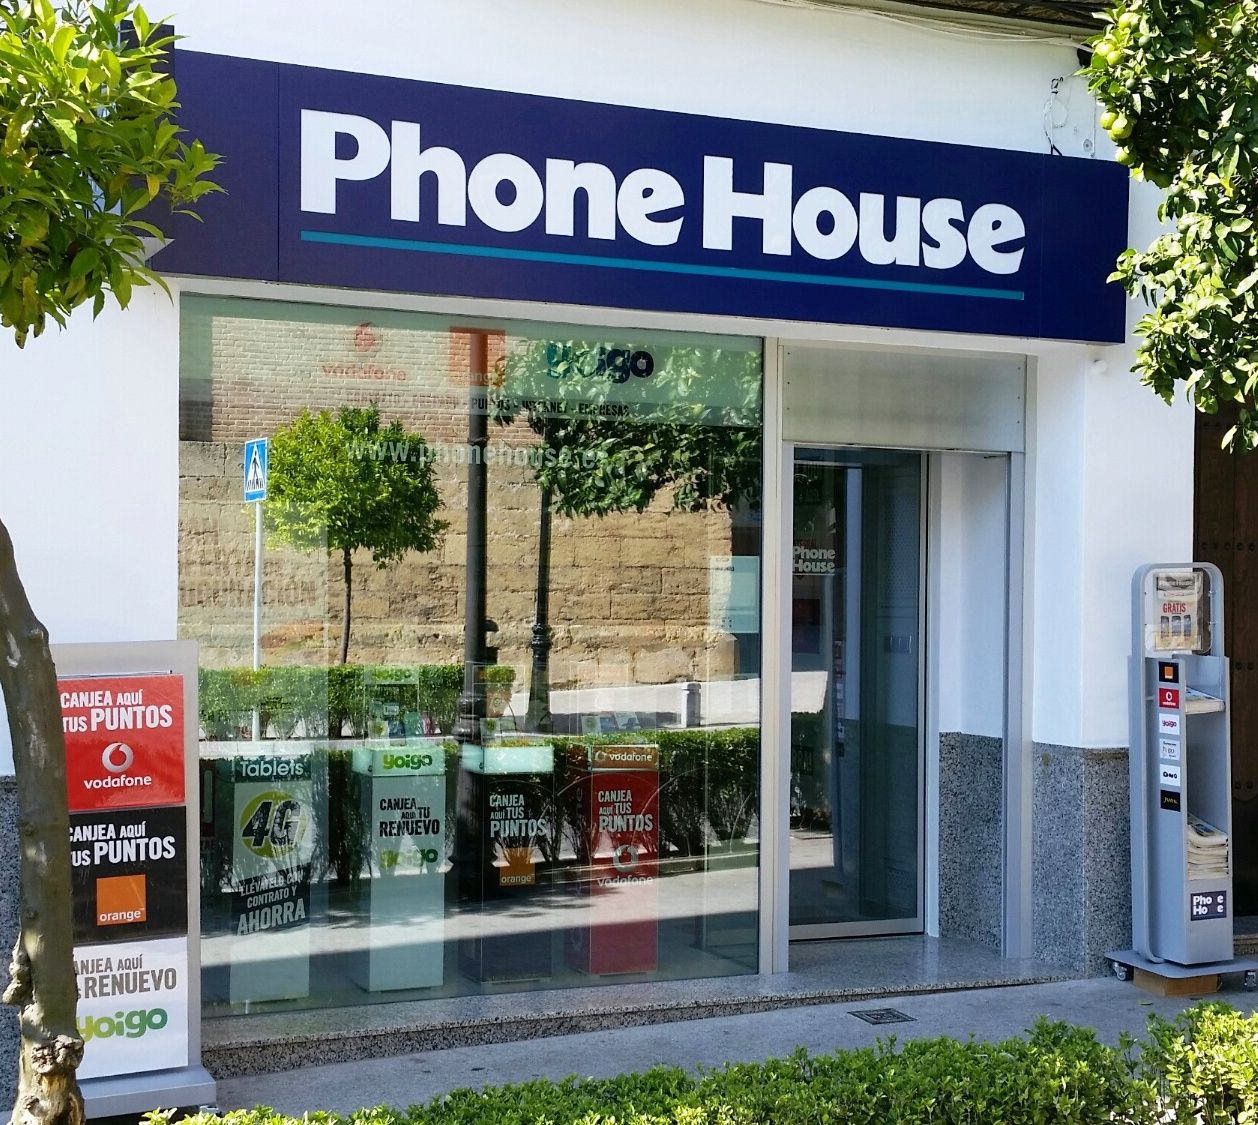 Caso de éxito: Las tiendas Phone House consumen un 25% menos de energía